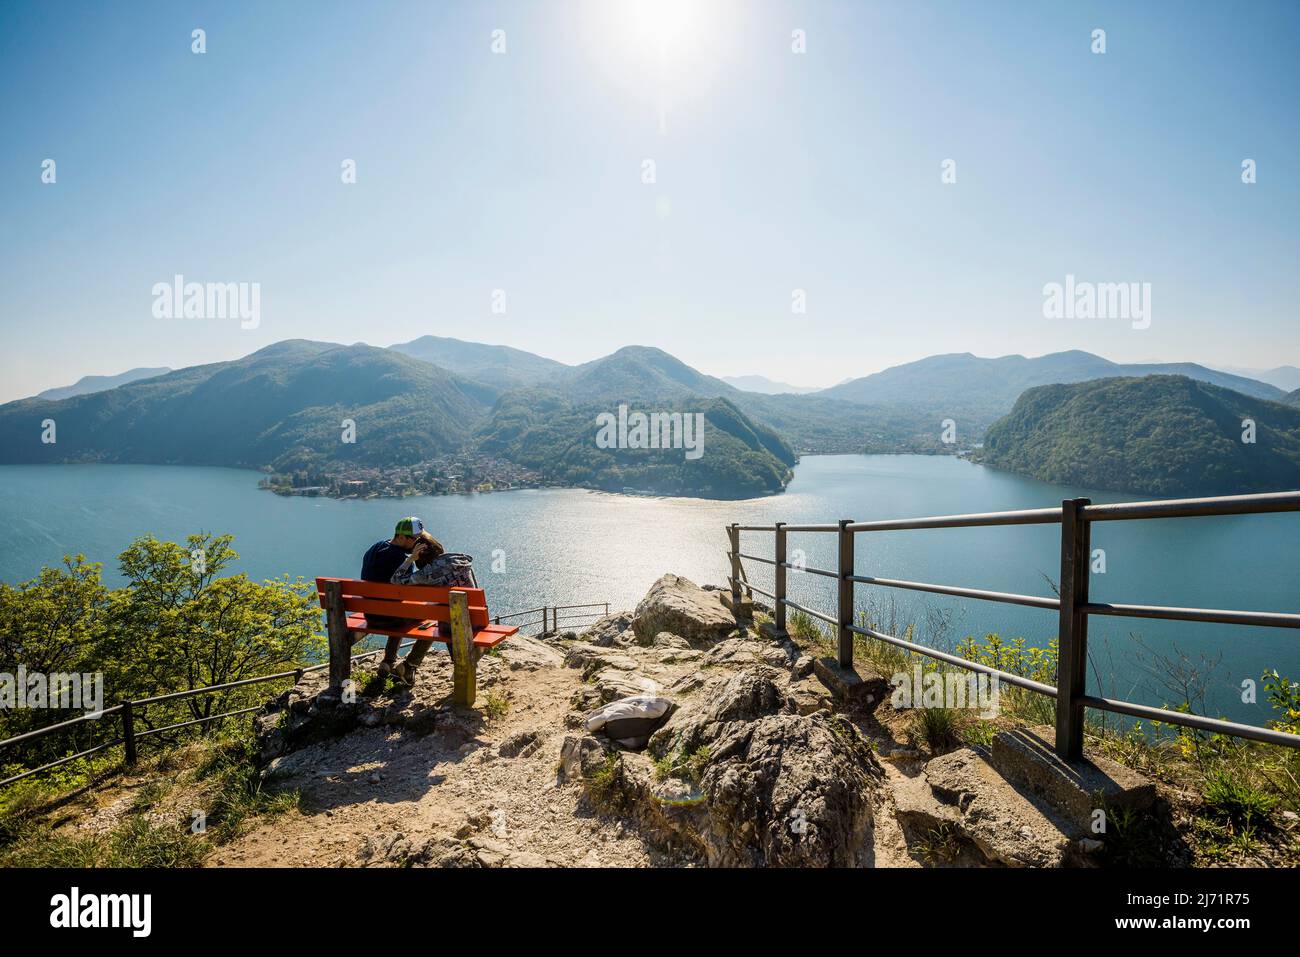 Viewpoint with couple on a bench, Sasso Delle Parole, near Lugano, Lake Lugano, Lago di Lugano, Ticino, Switzerland Stock Photo